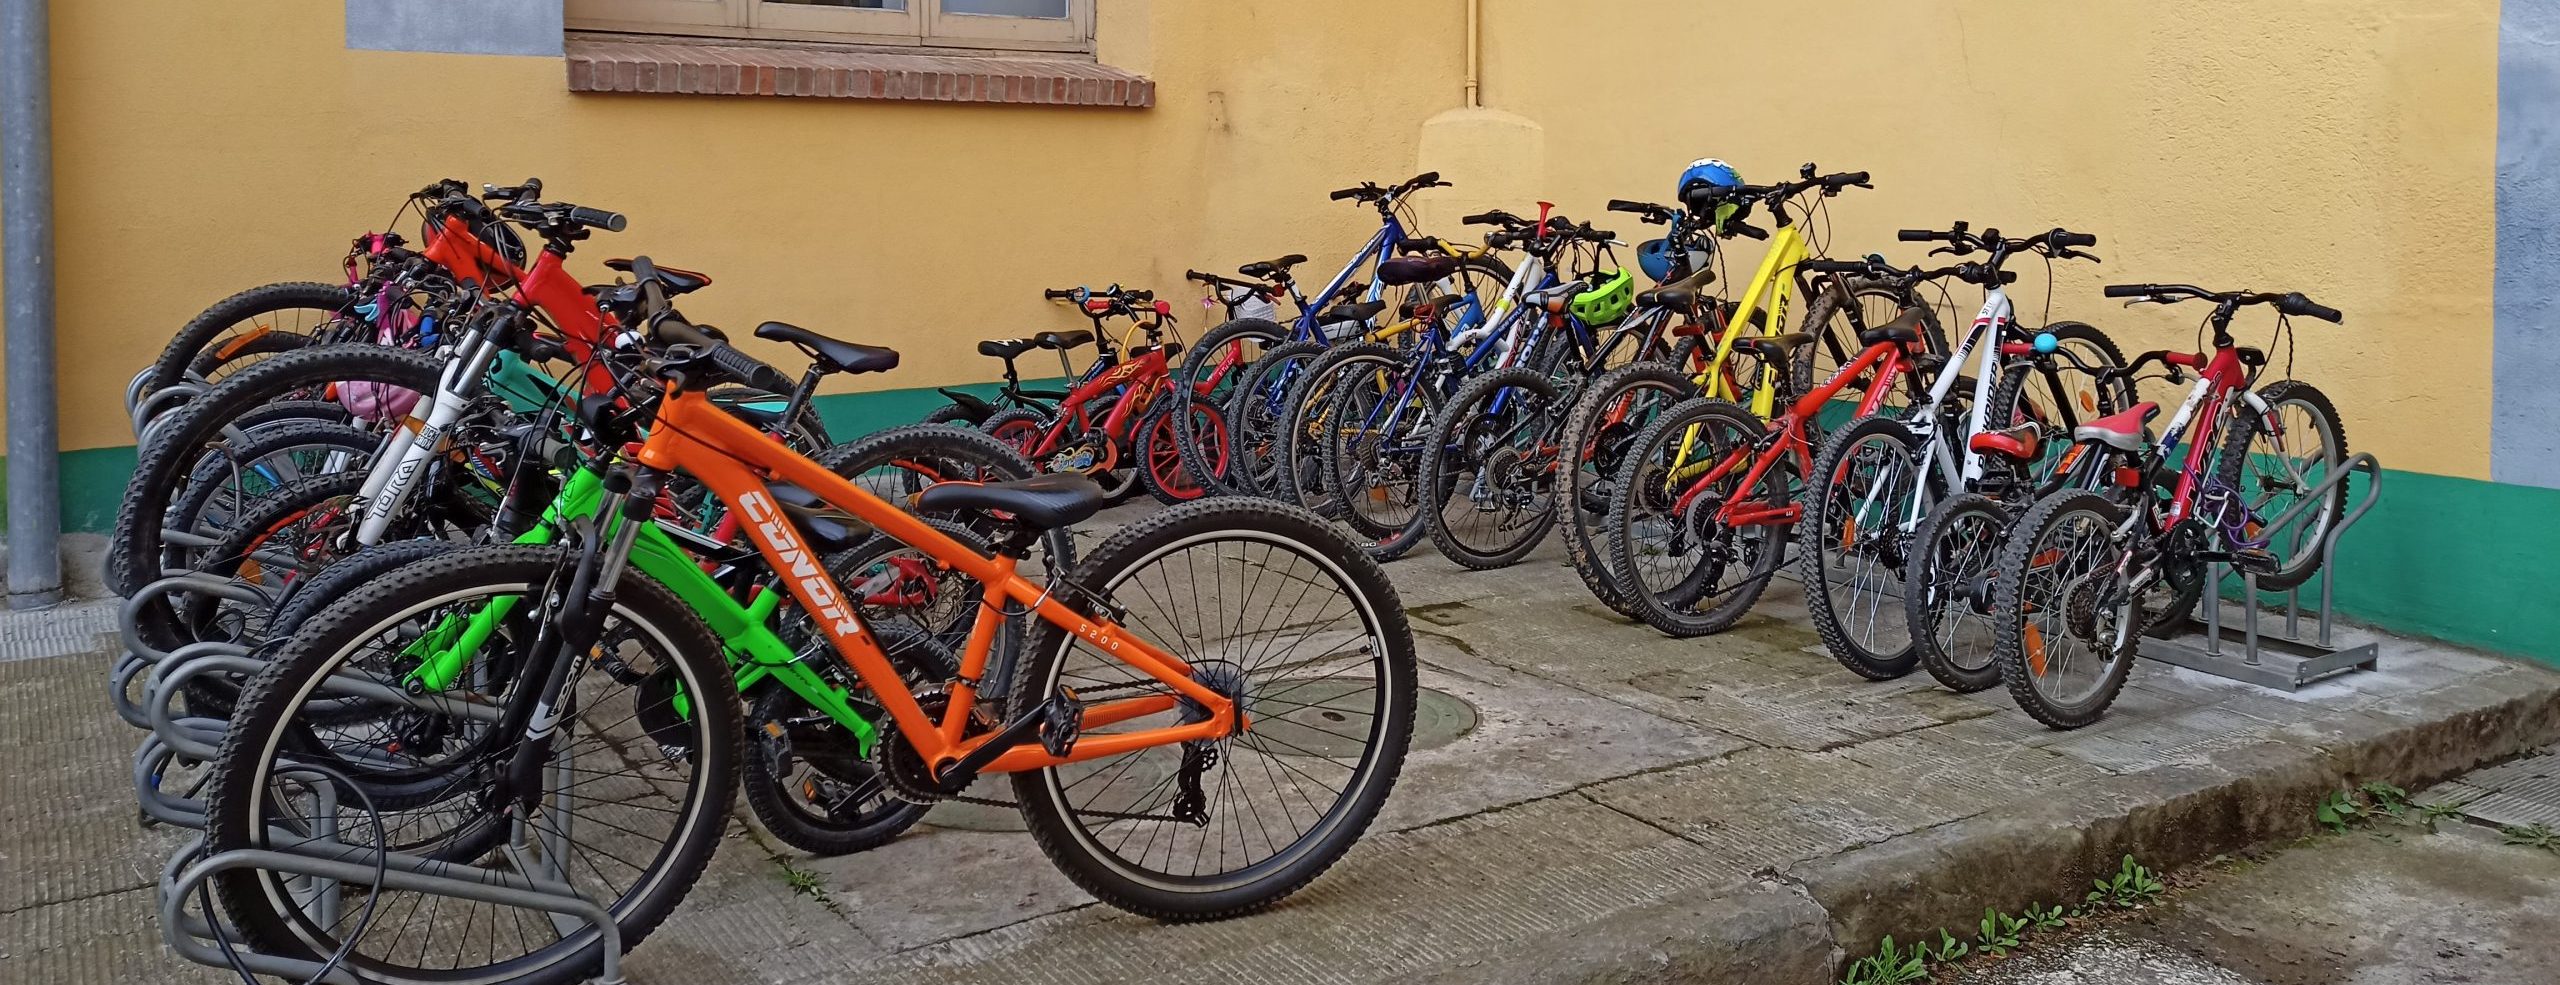 Parcheggio bici all'interno di una scuola piena di bici grazie al bikebus.